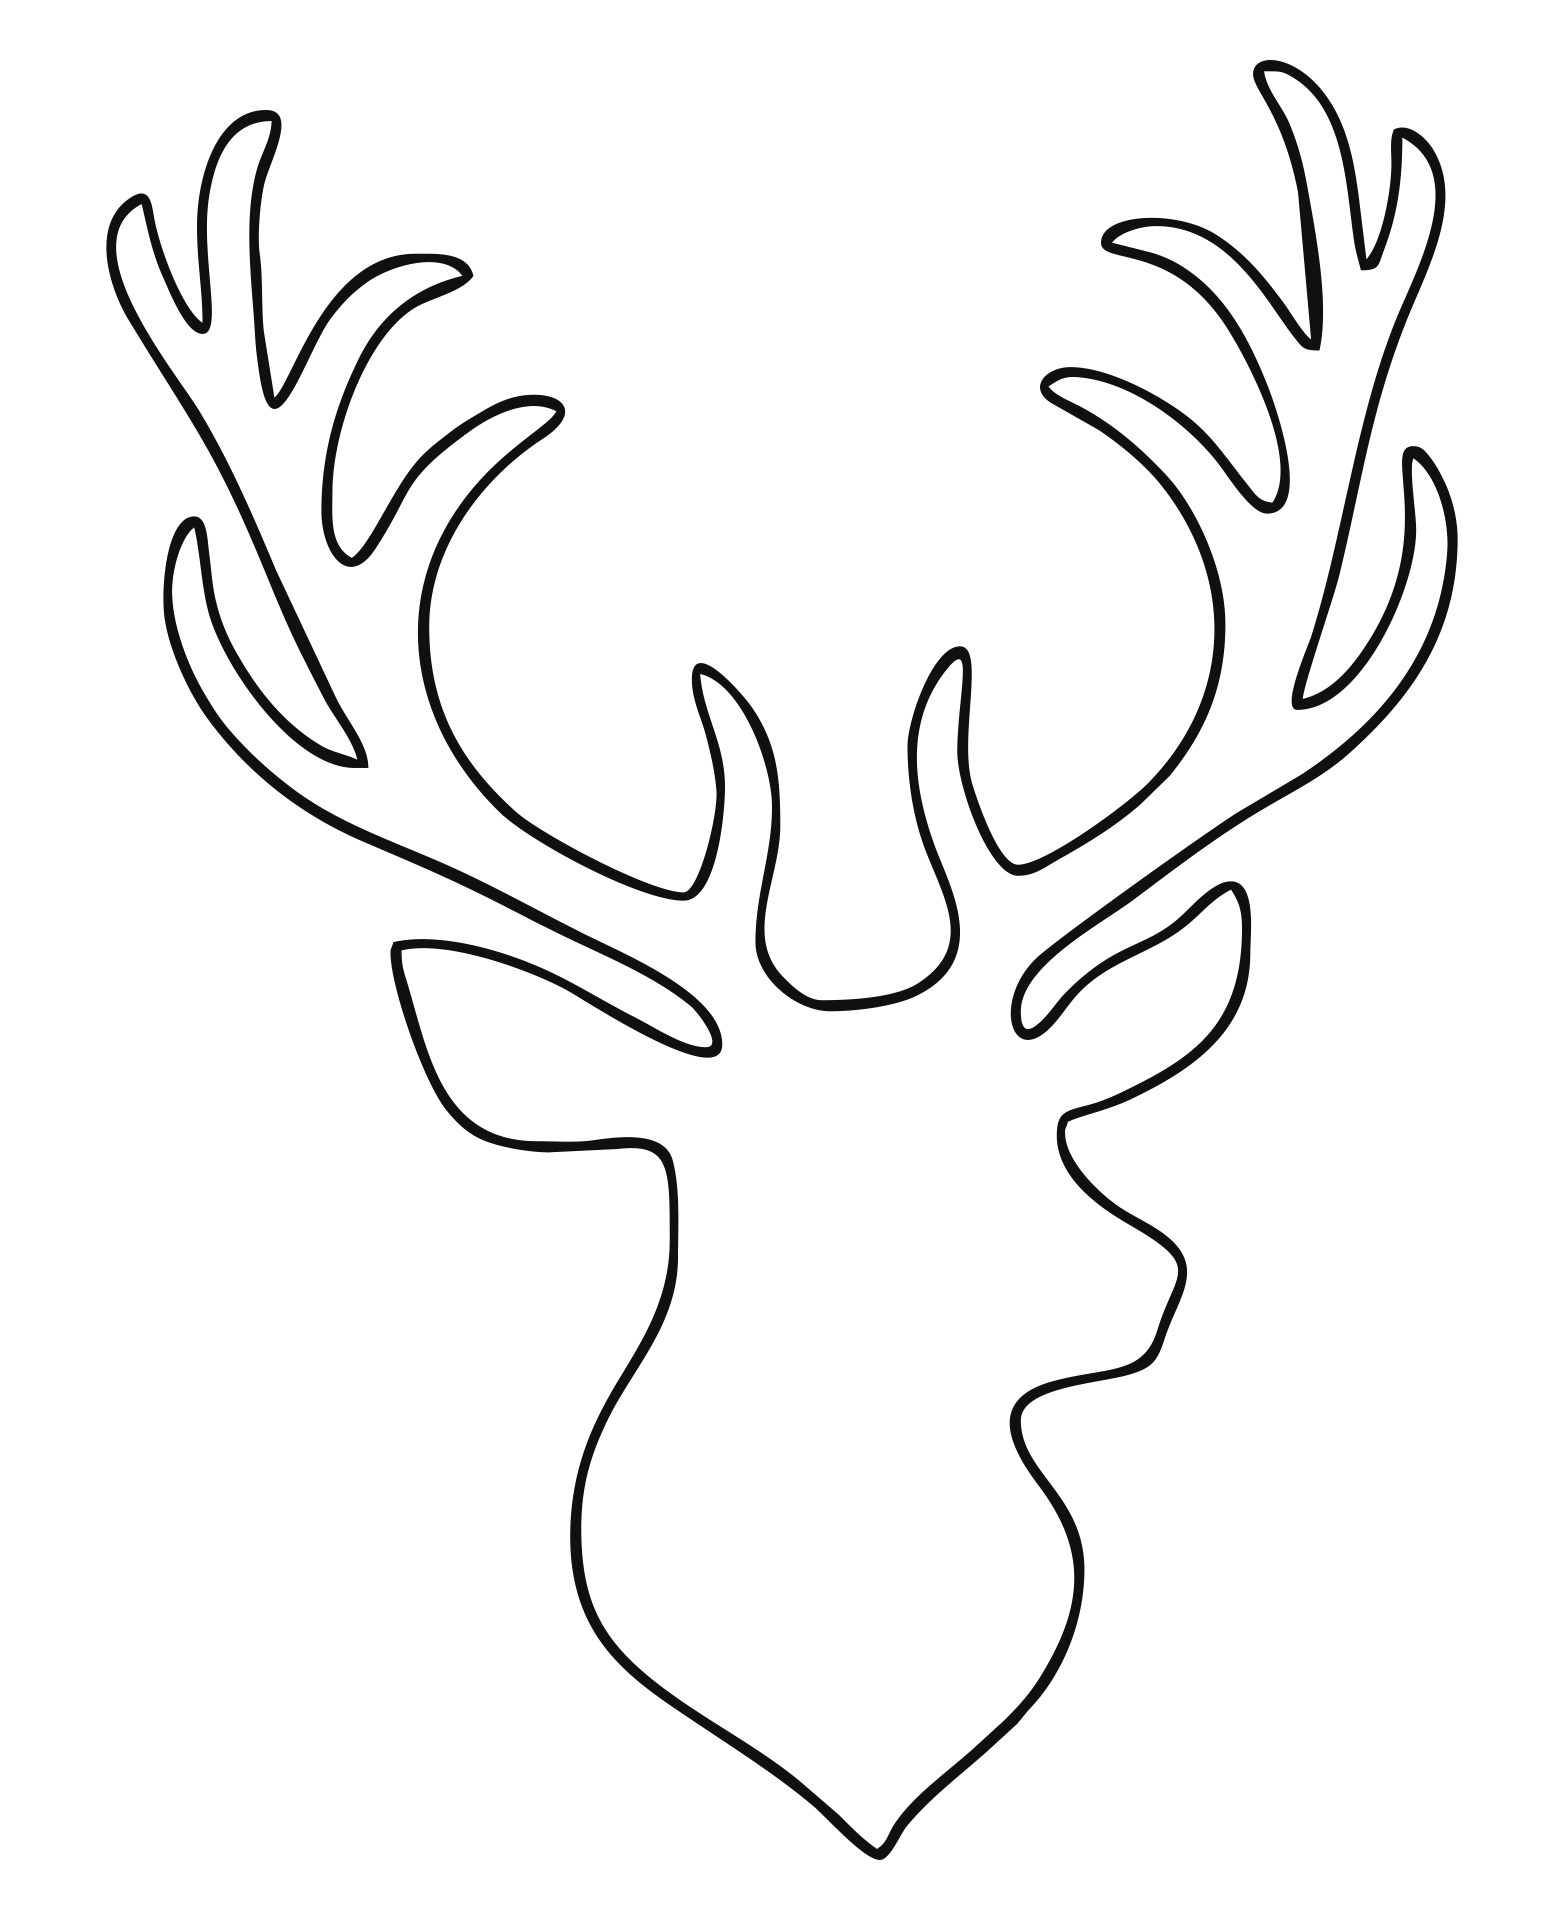 9-best-images-of-printable-reindeer-patterns-free-printable-reindeer